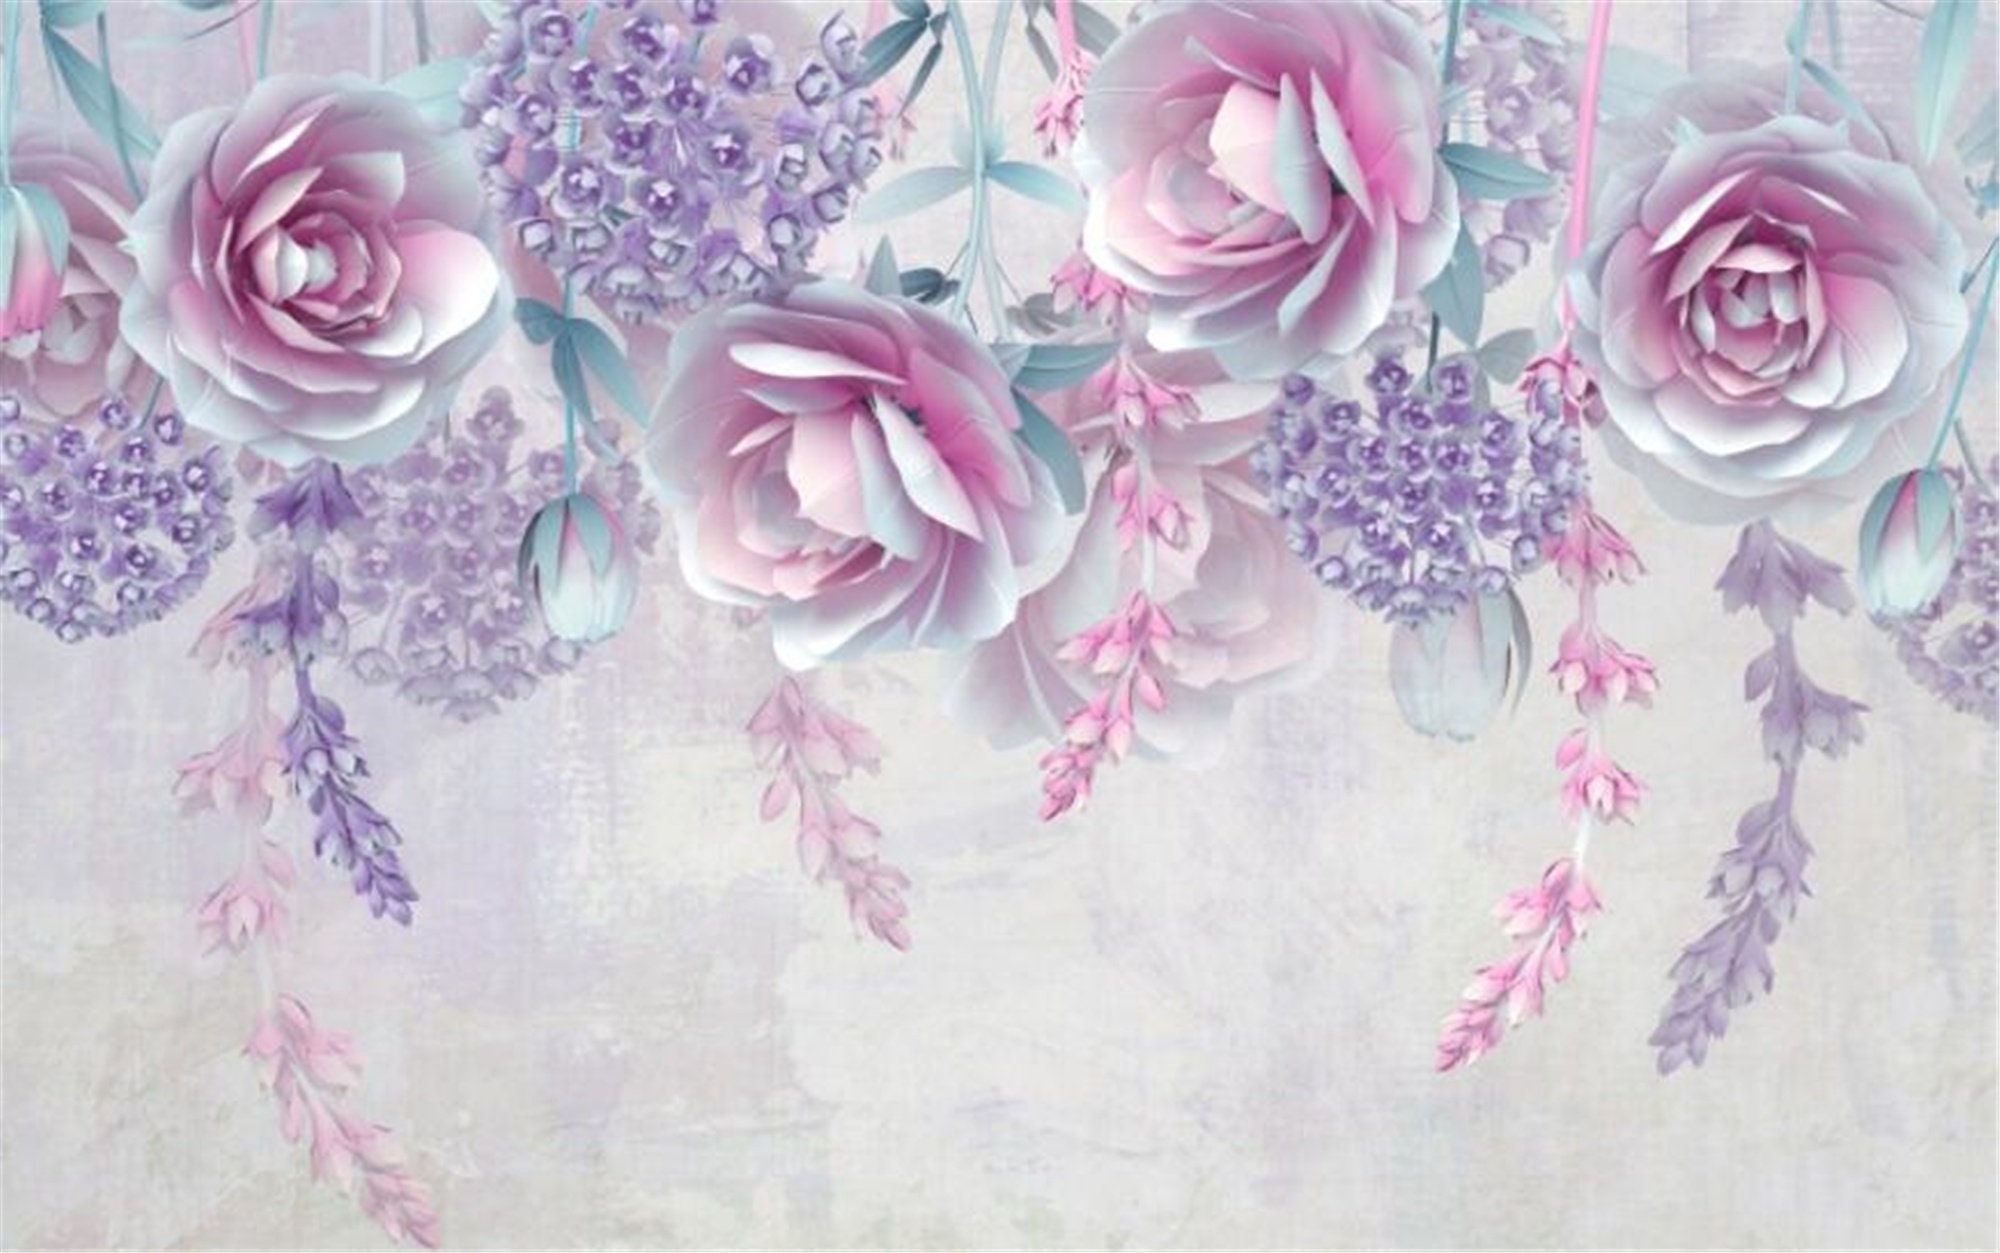 Custom wallpaper photo modern purple 3d embossed flower mural | Etsy